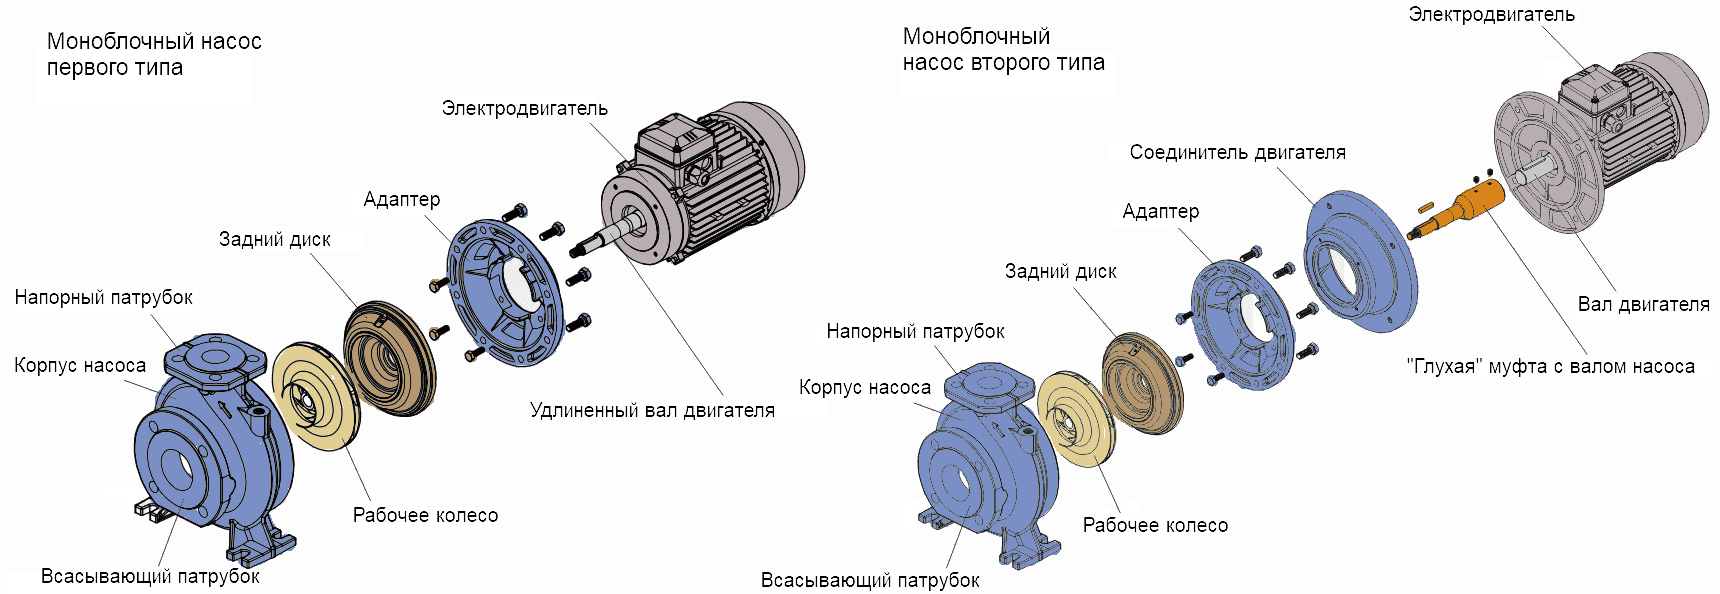 Две разновидности центробежных моноблочных насосов